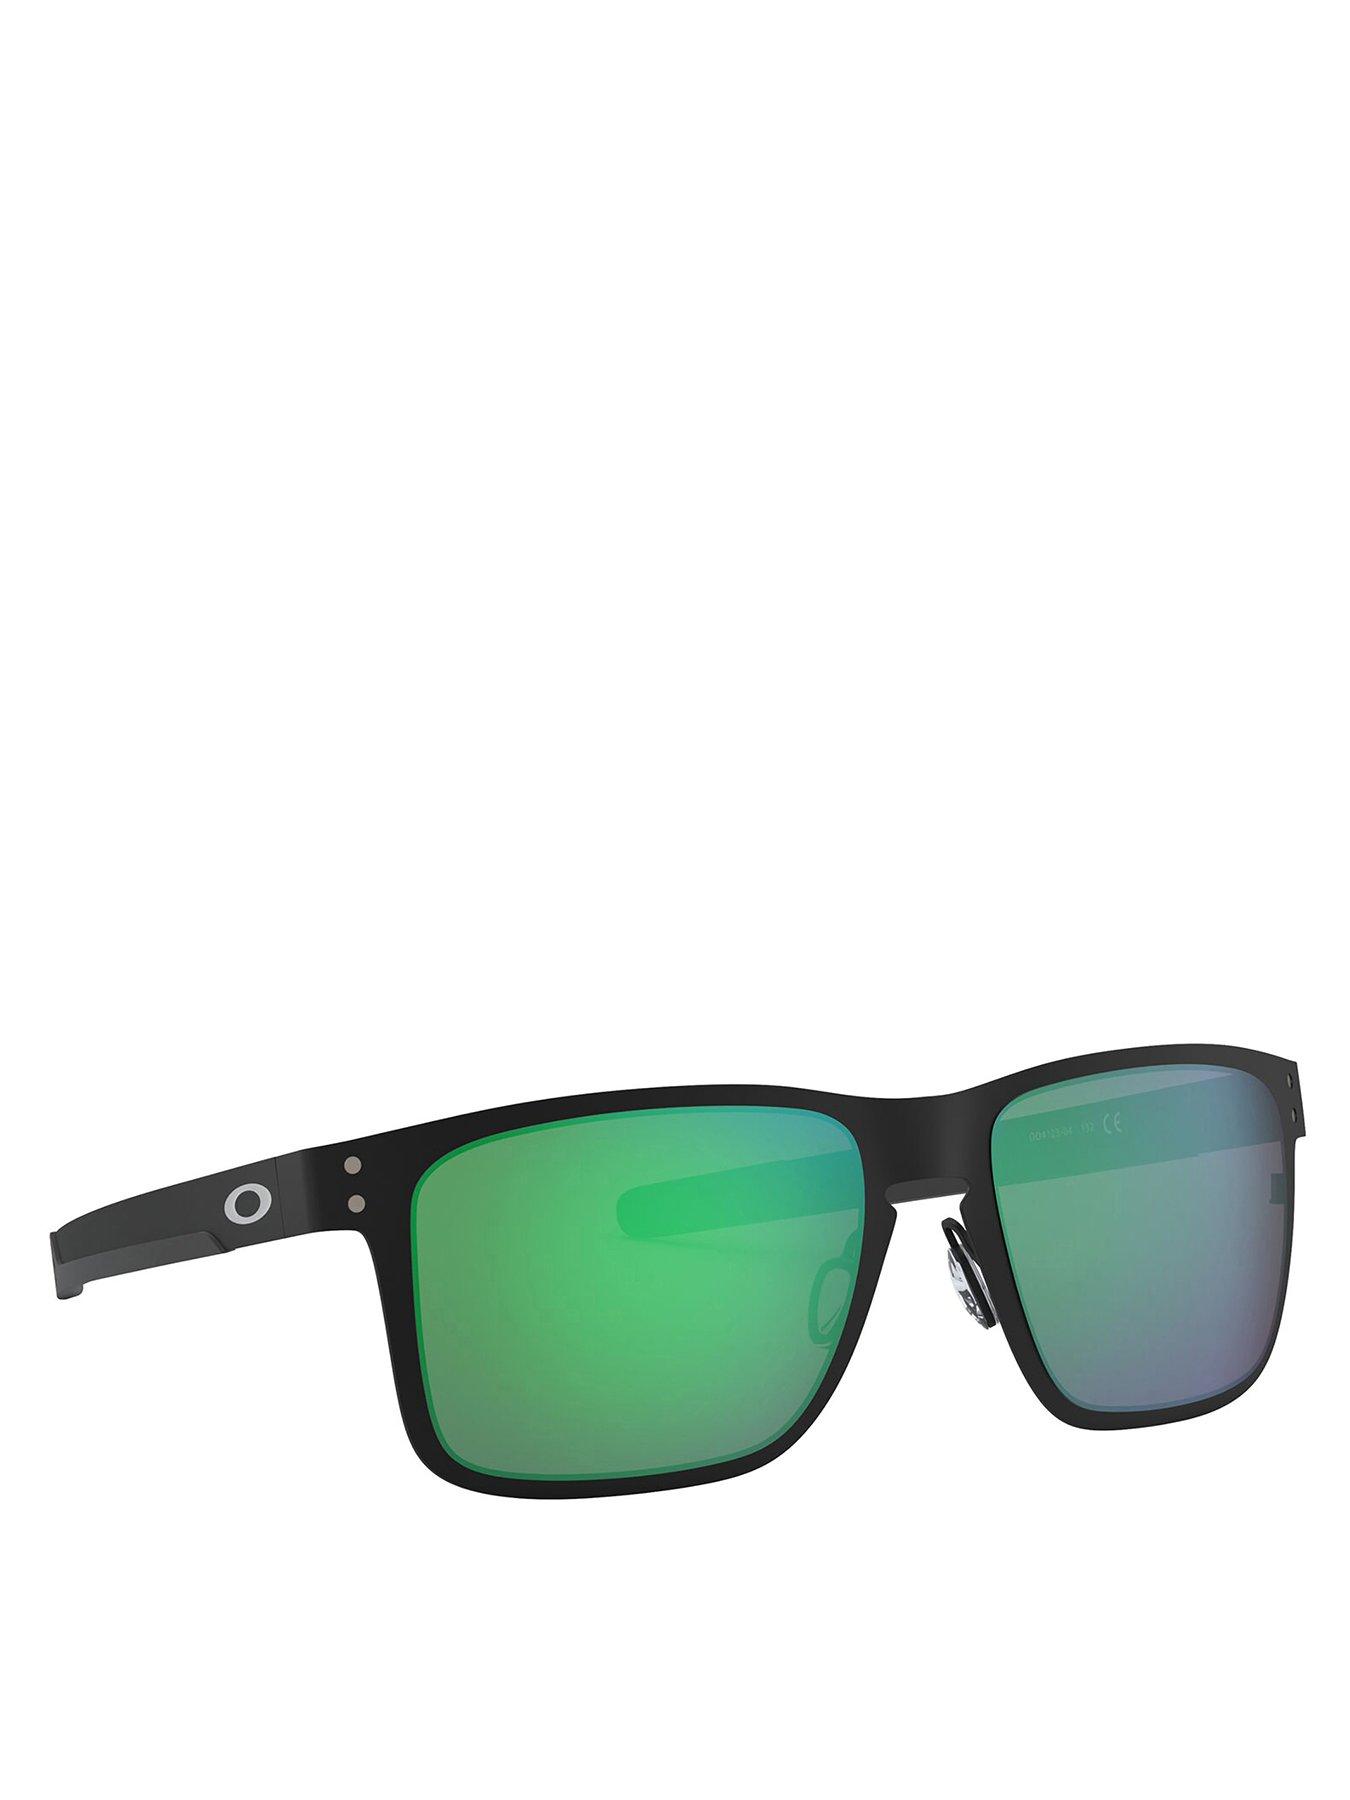 Oakley Square Black Frame Green Lens Sunglasses 